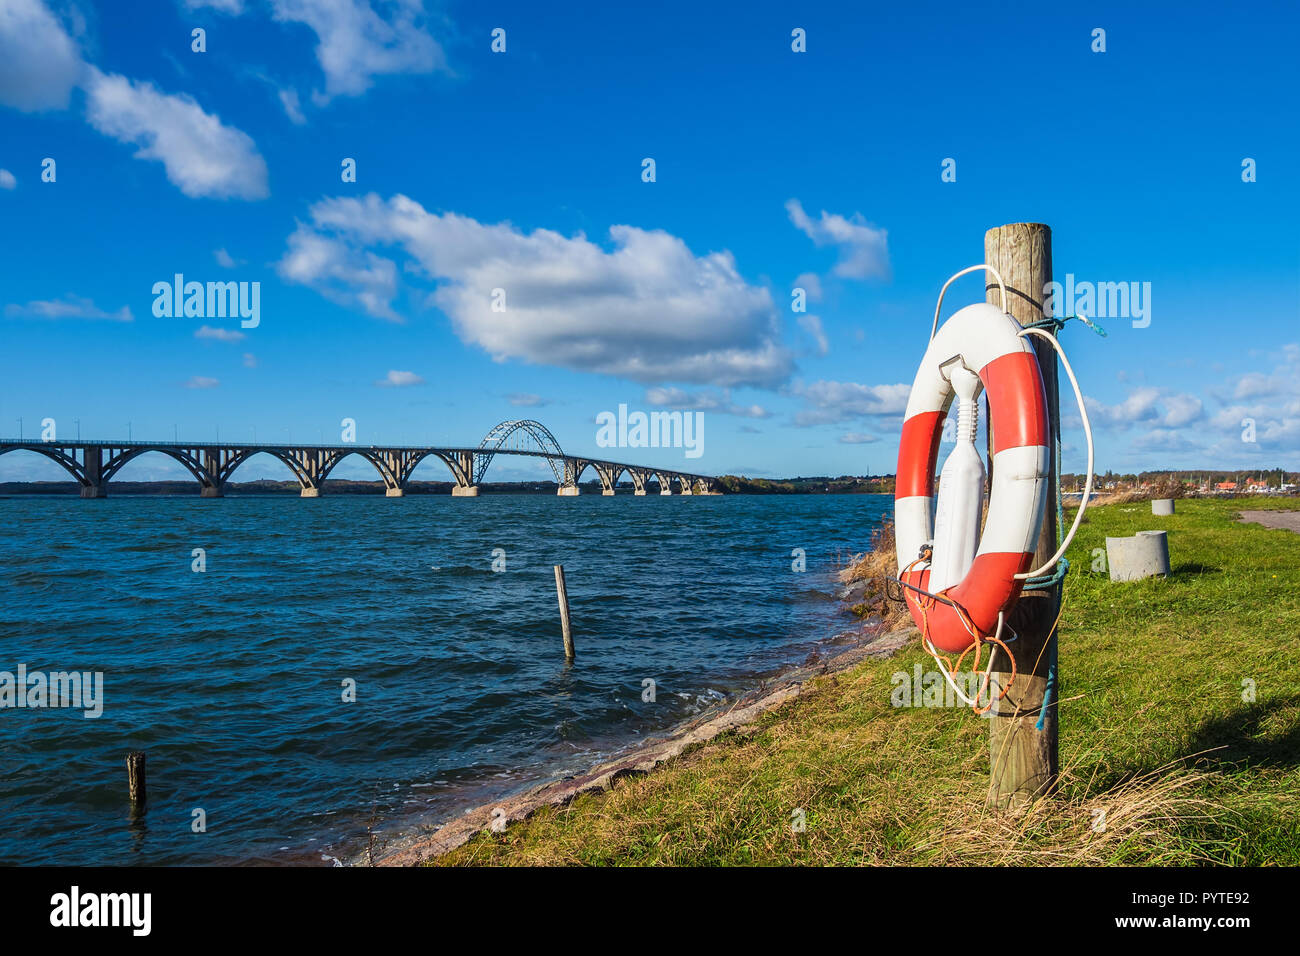 A bridge between Seeland und Moen in Denmark. Stock Photo